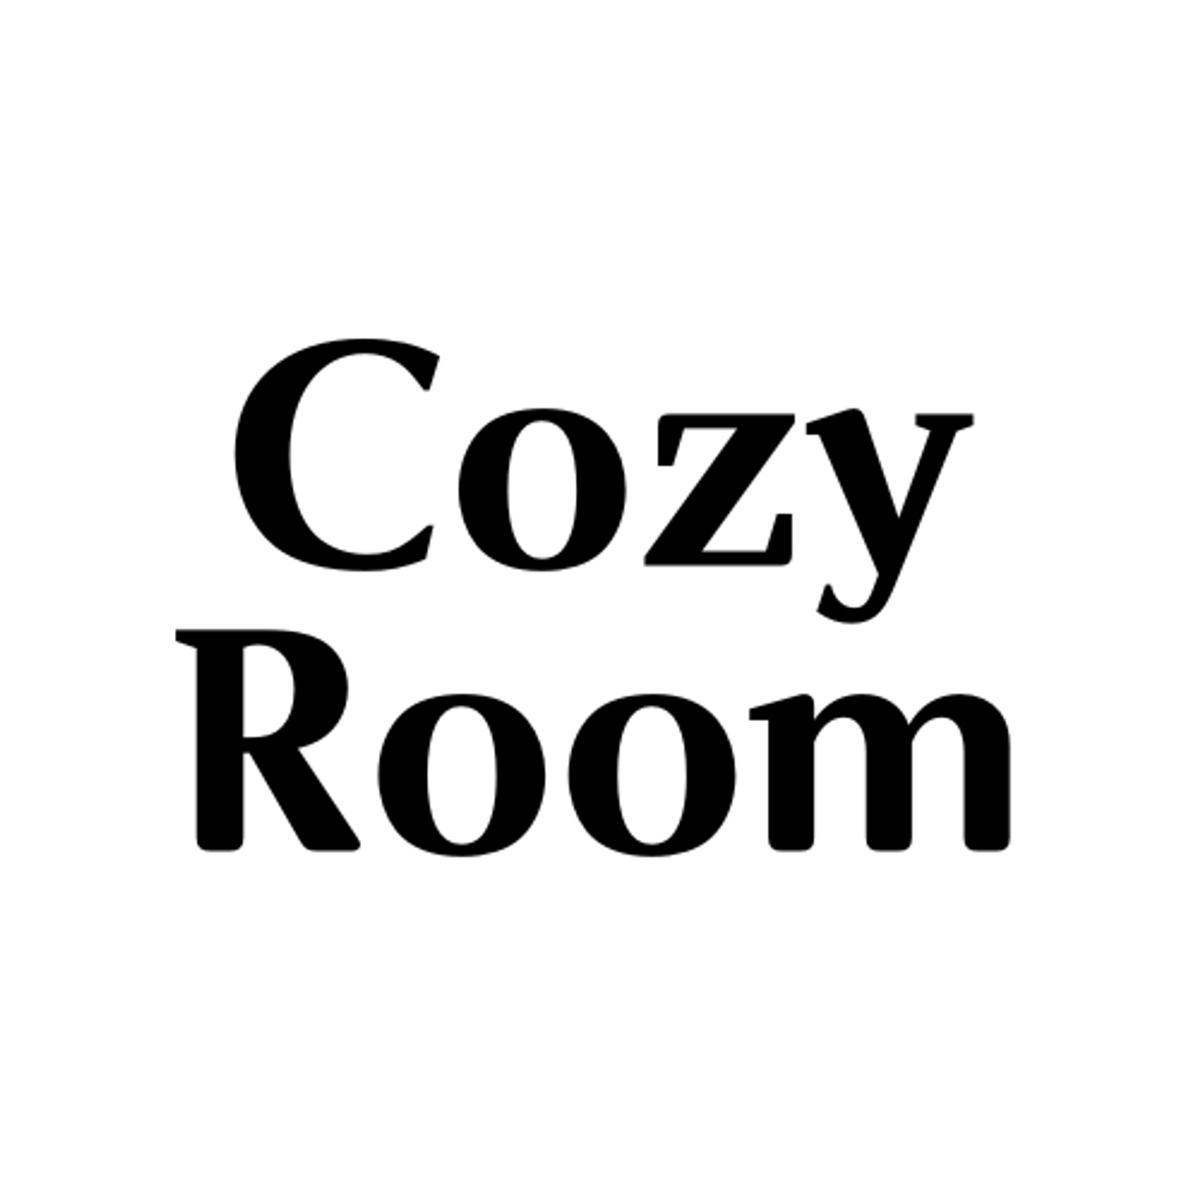 Cozy Roomの画像